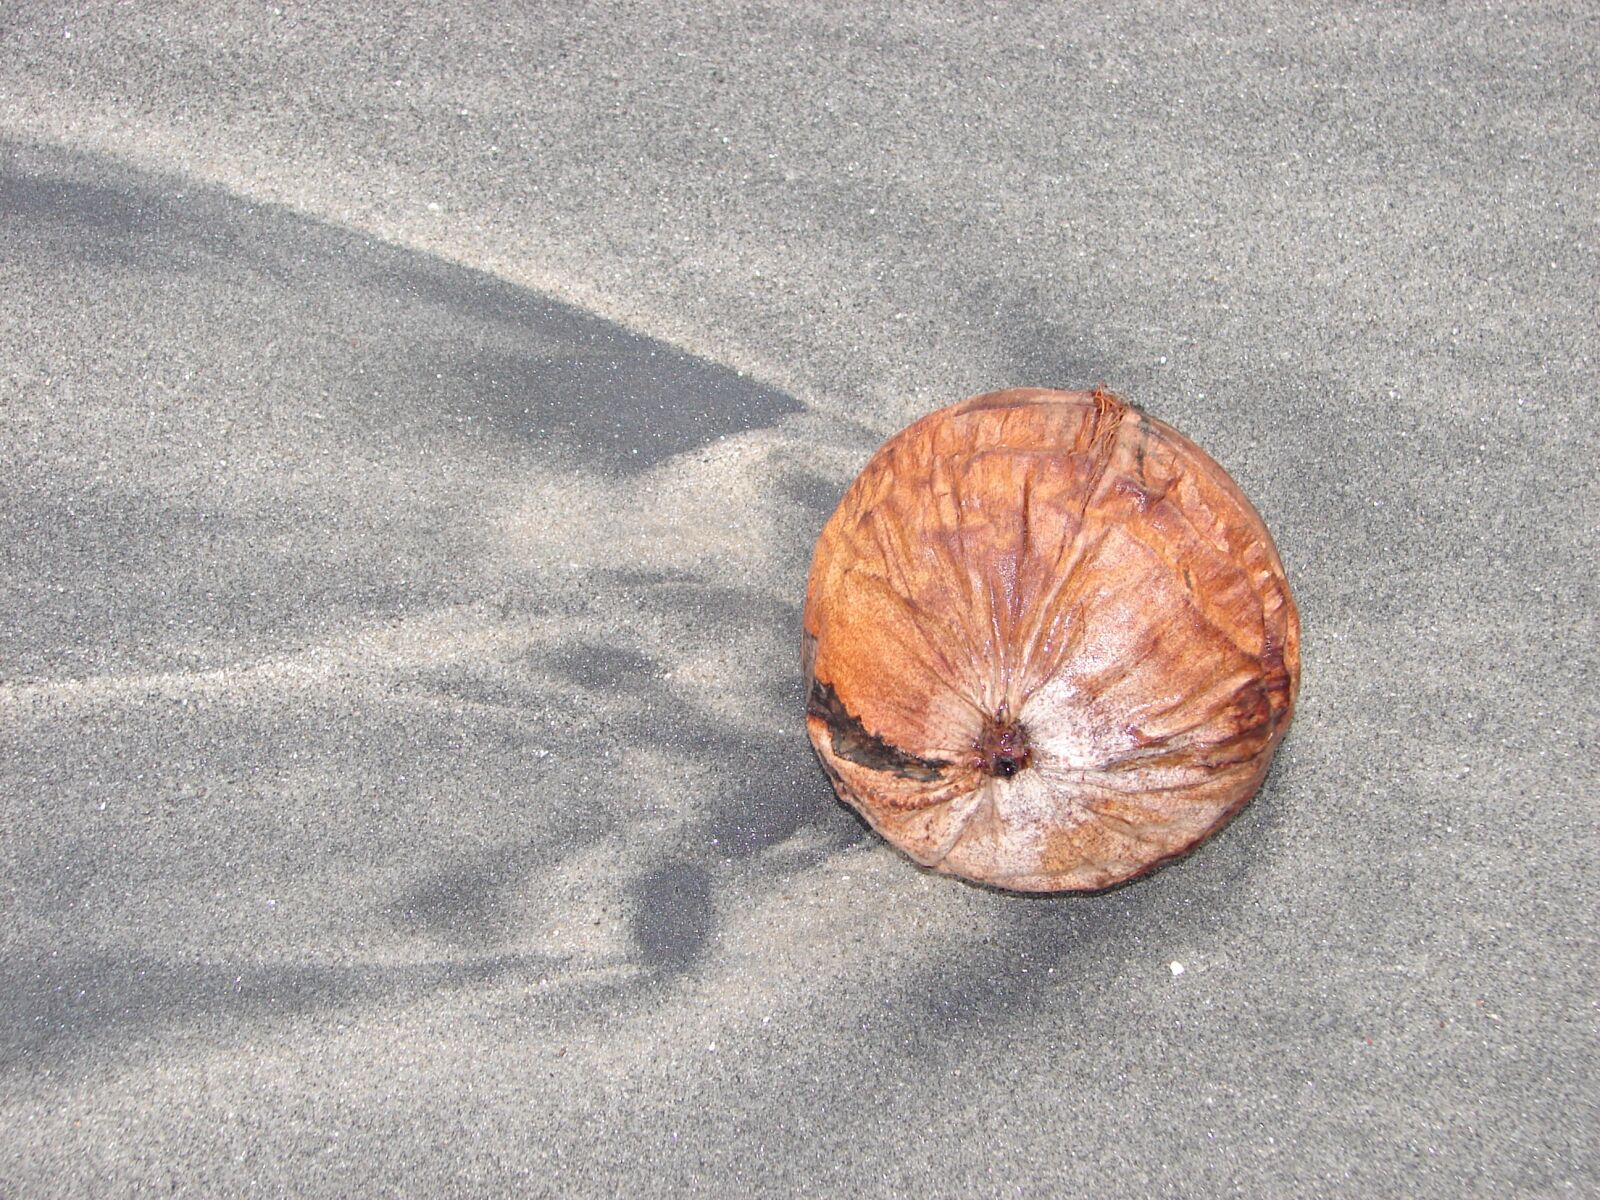 Sony DSC-H1 sample photo. Coconut, beach, sand photography